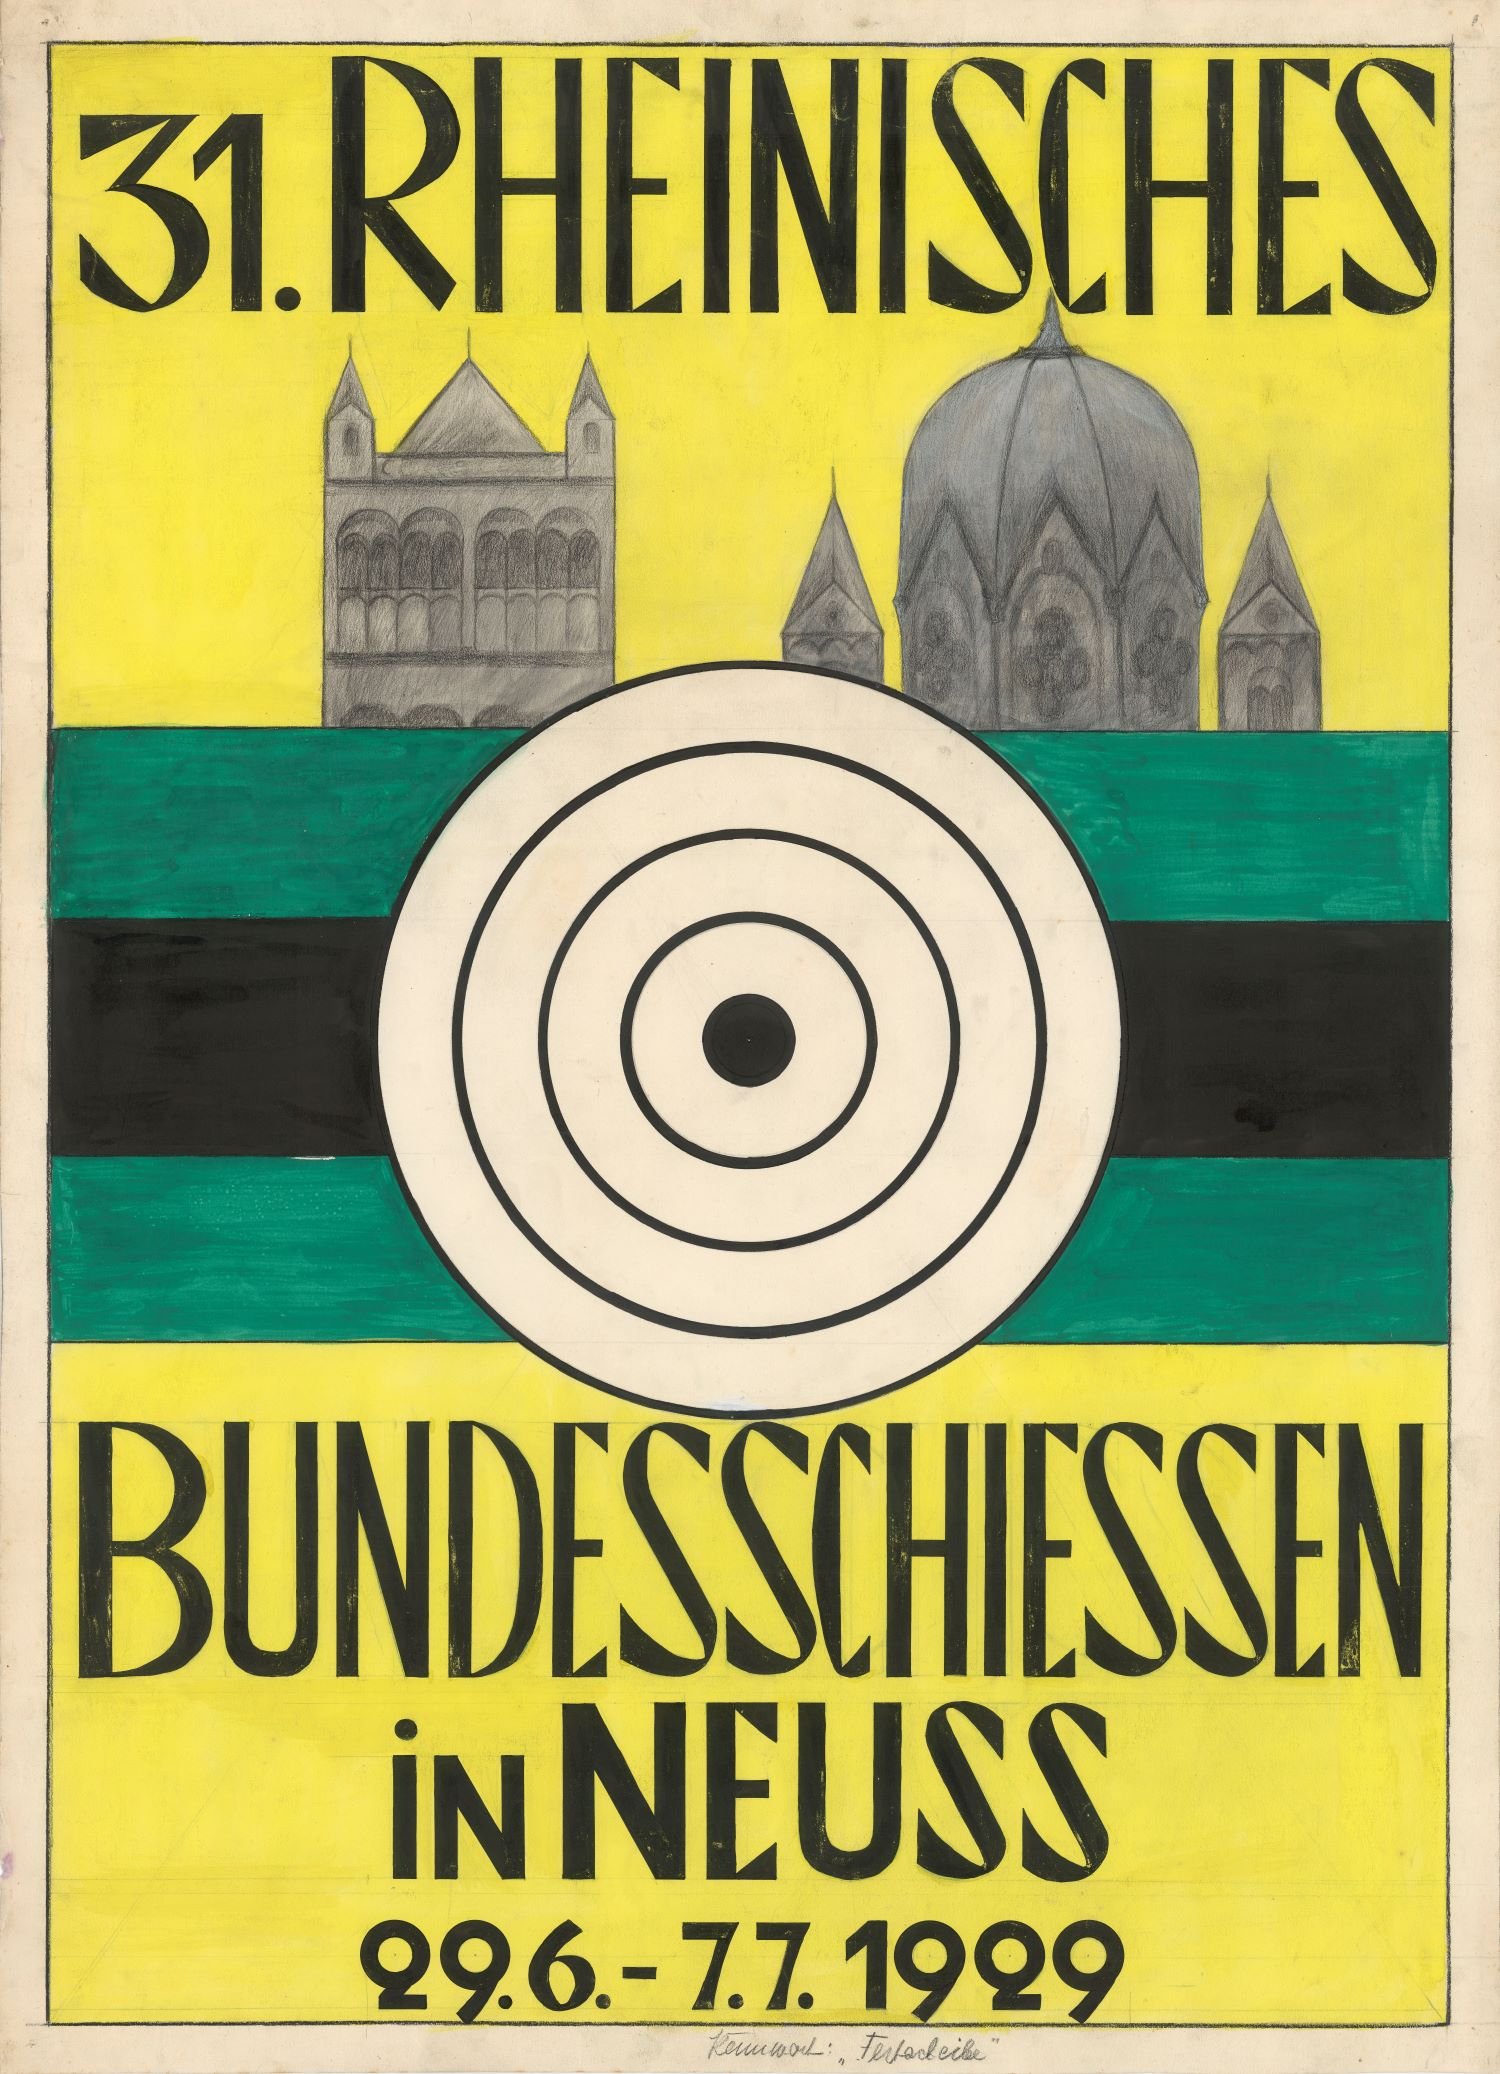 Festplakat Rheinisches Bundesschießen 1929 EntwurfNeuss 1929 (Rheinisches Schützenmuseum Neuss CC BY-NC-SA)